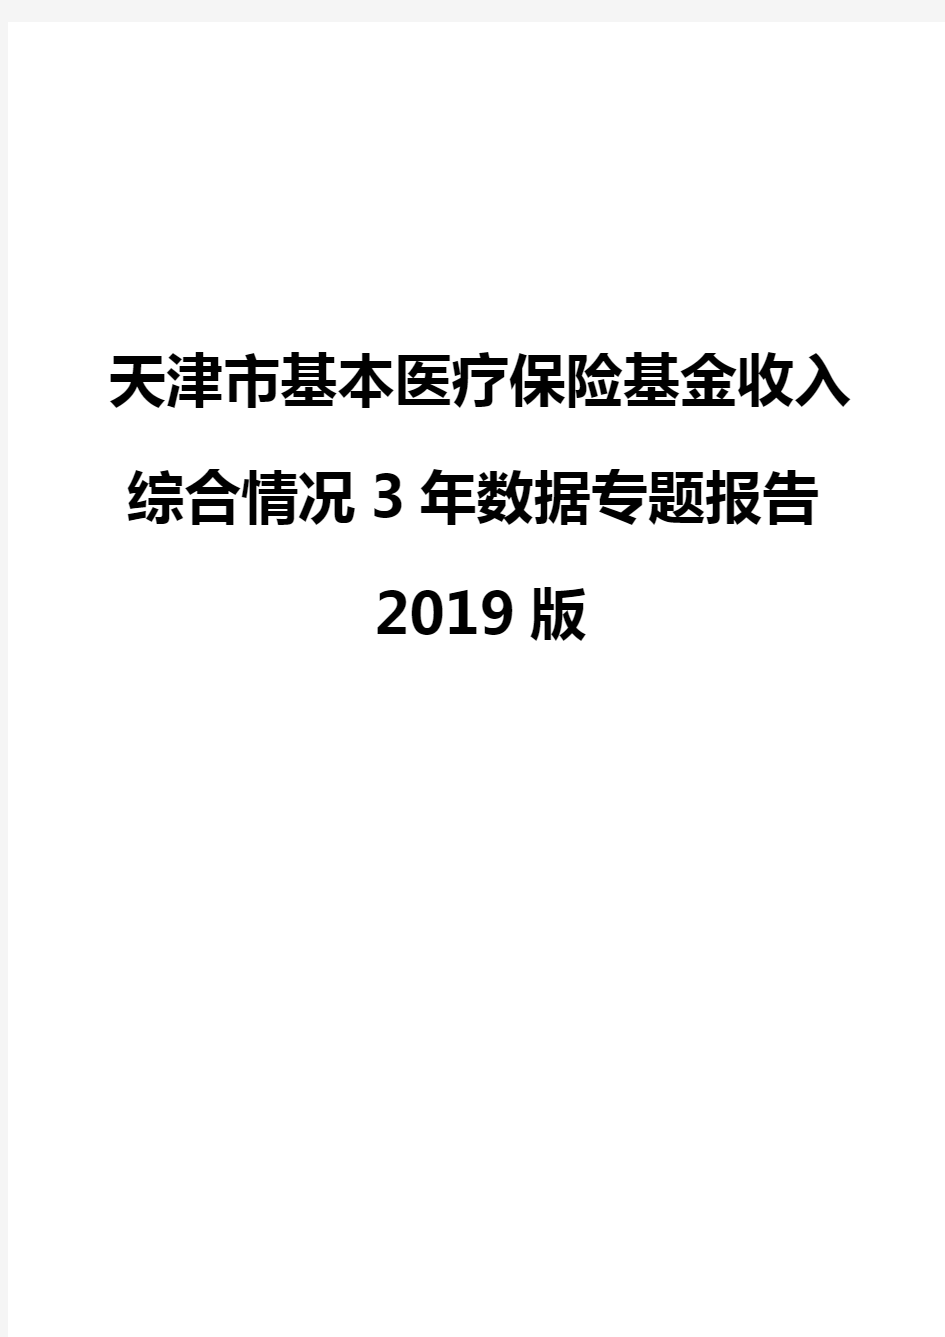 天津市基本医疗保险基金收入综合情况3年数据专题报告2019版